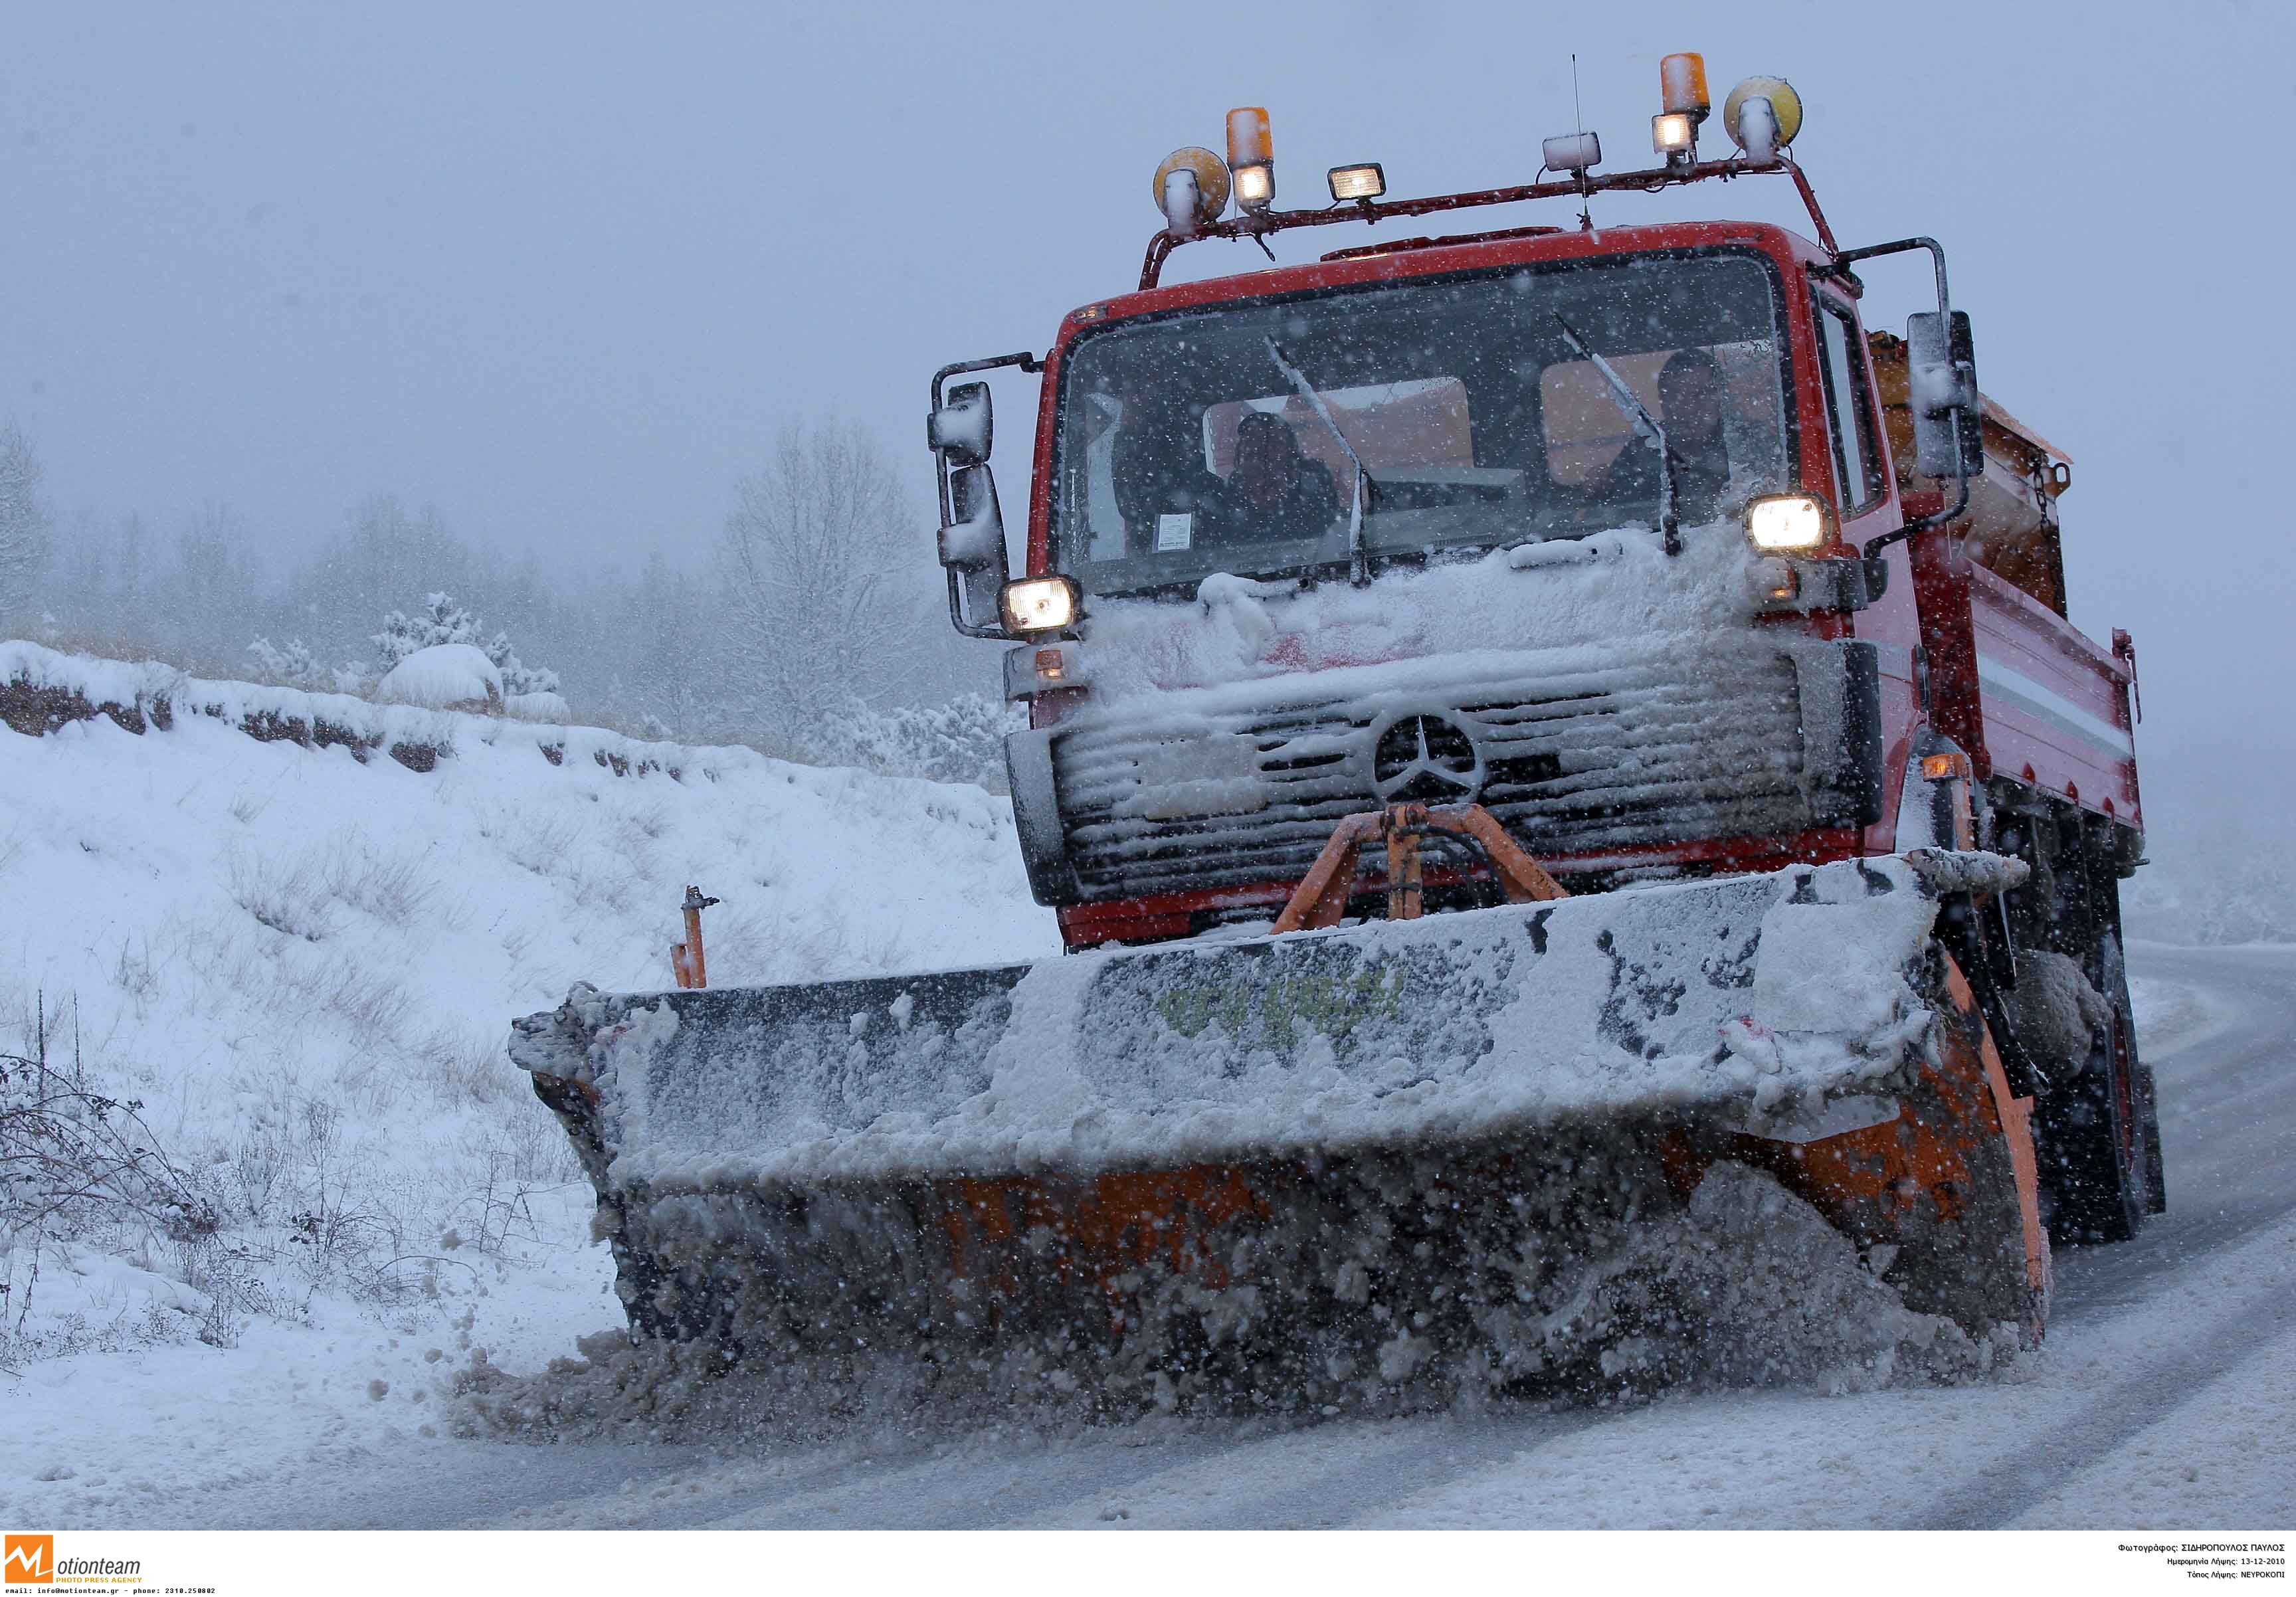 Τα εκχιονιστικά μηχανήματα προσπαθούσαν να καθαρίθσουν τους δρόμους από τις στρώσεις χιονιού